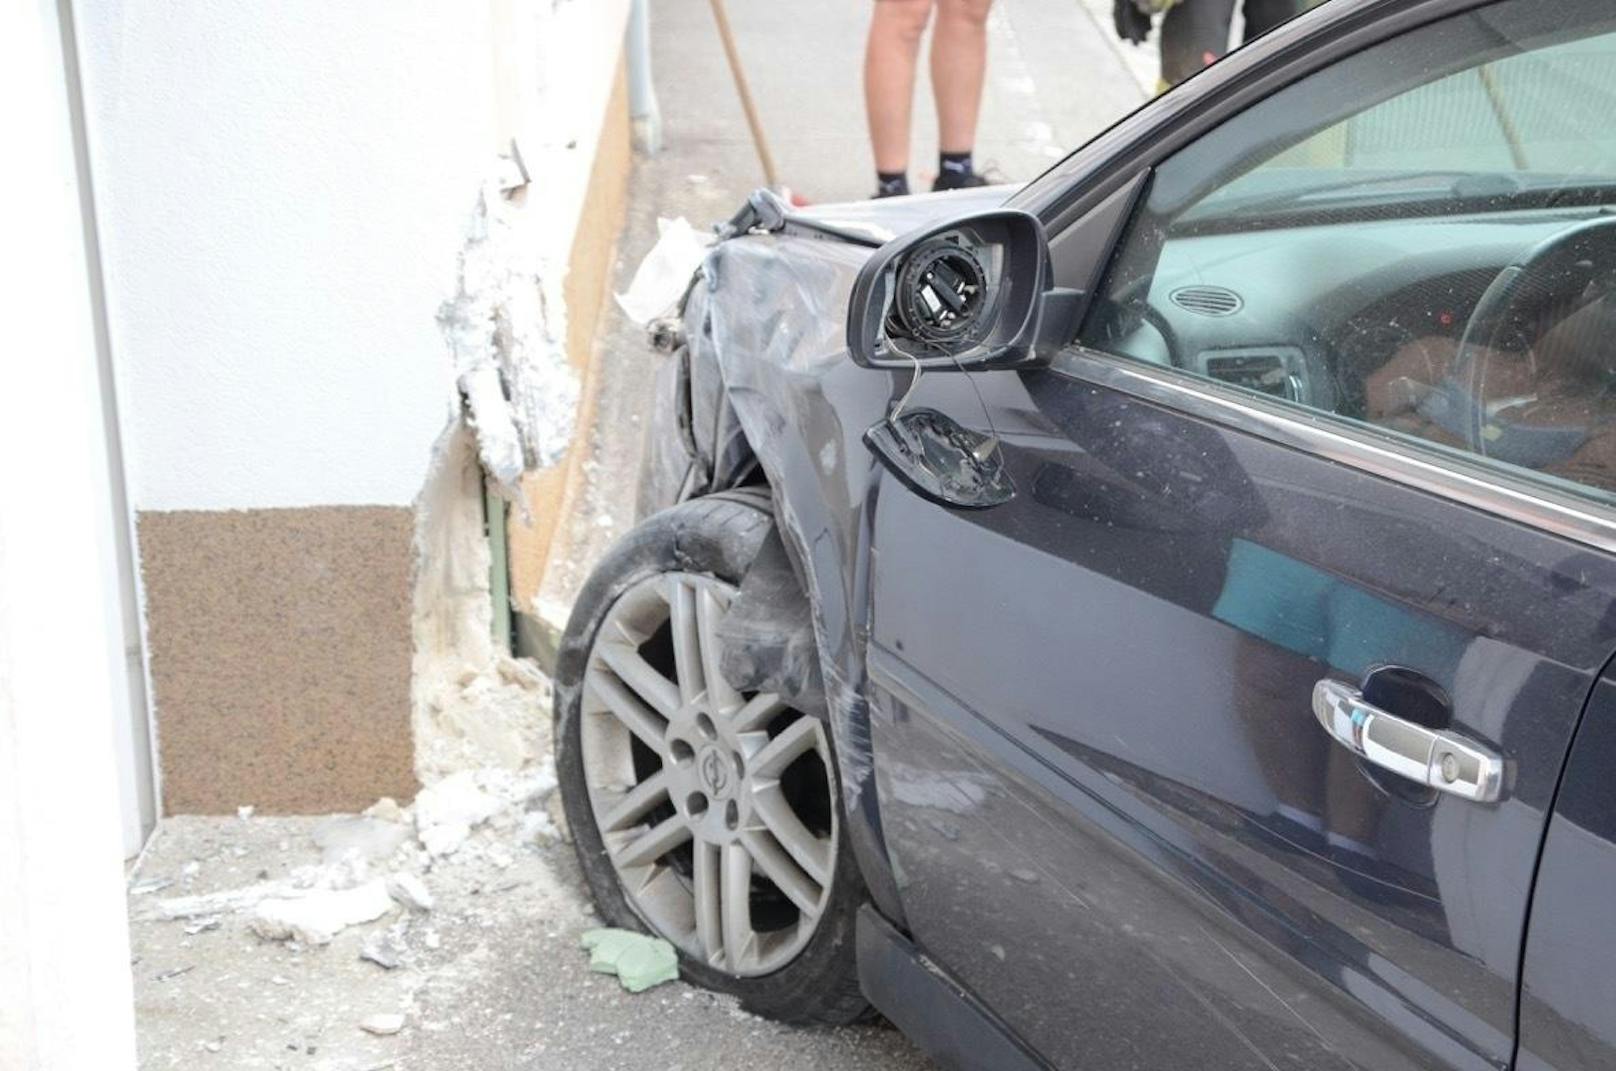 Opel raste gegen Haus - Lenker per Heli ins Spital